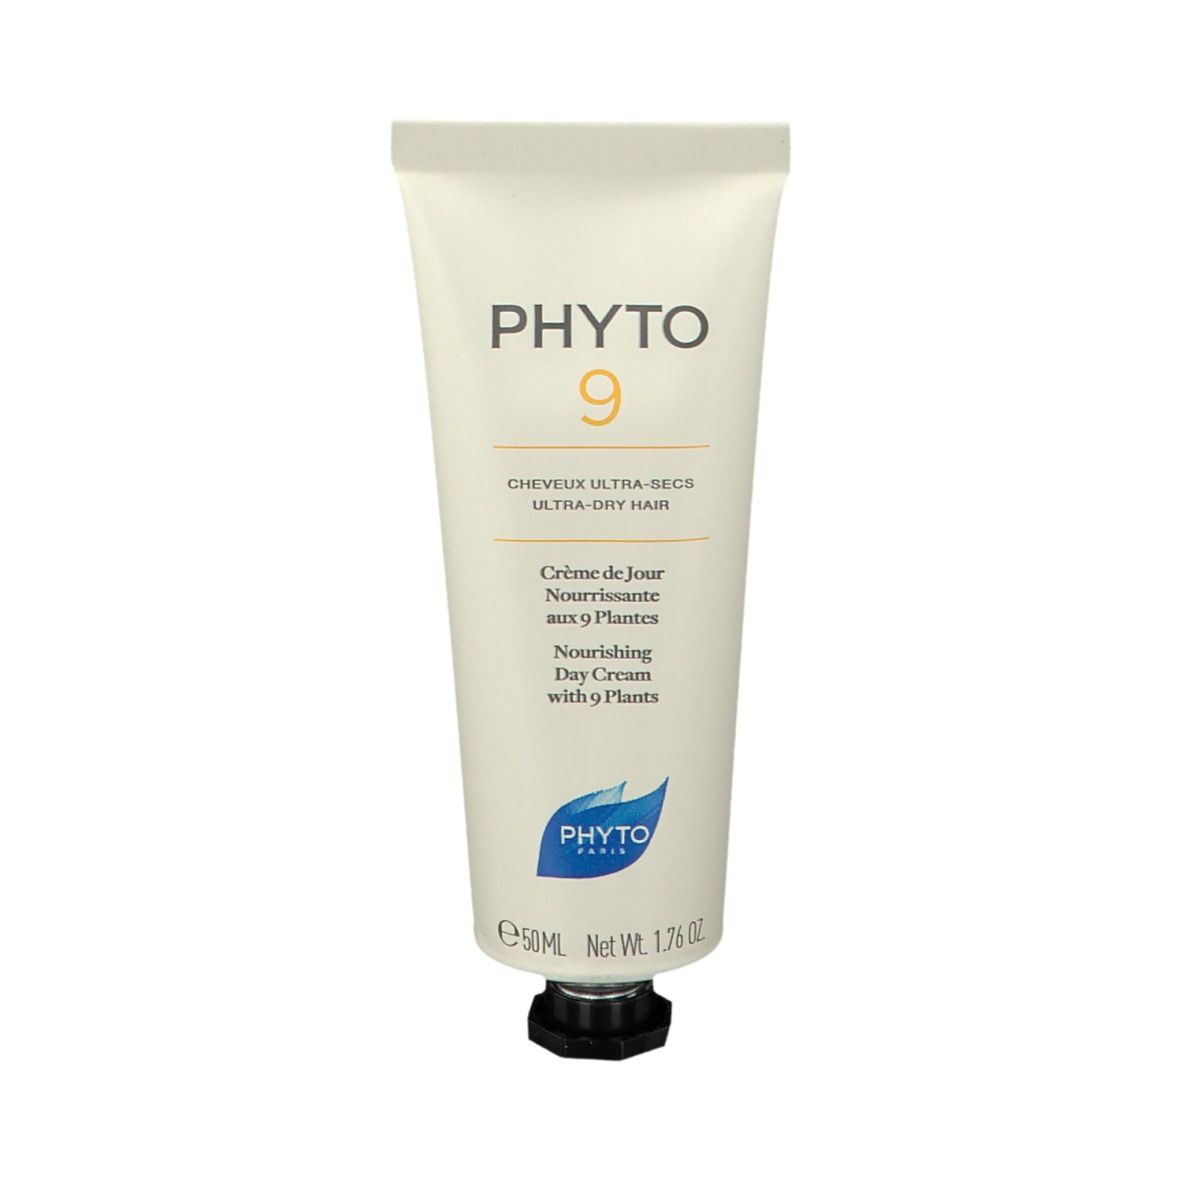 Phyto 9 Crème de jour nutrition brillance aux 9 plantes